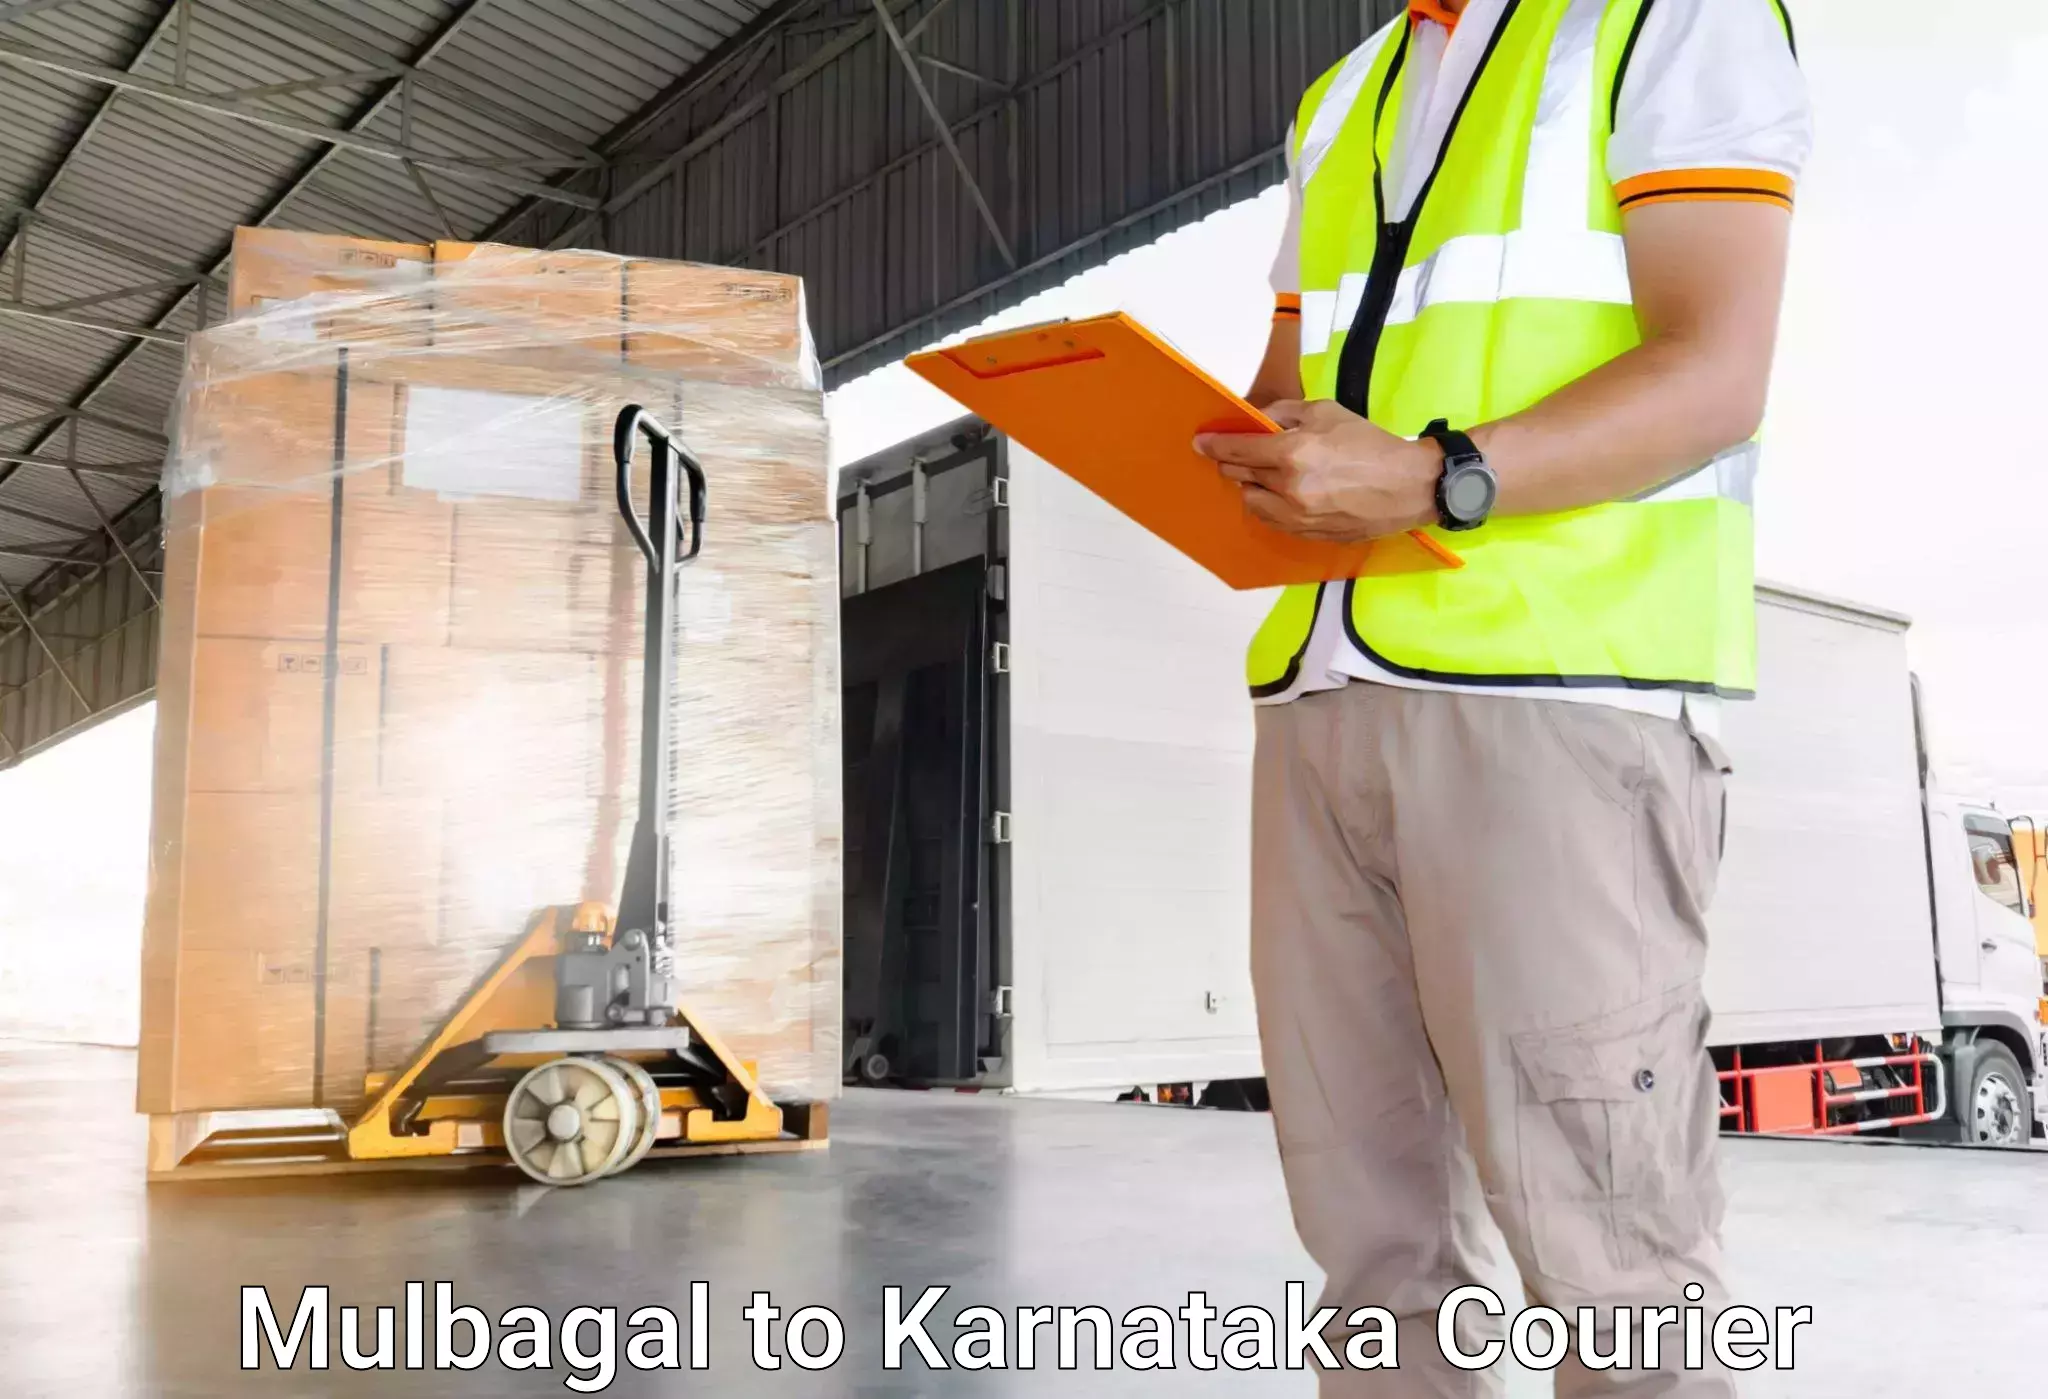 Luggage transport schedule Mulbagal to Kanjarakatte